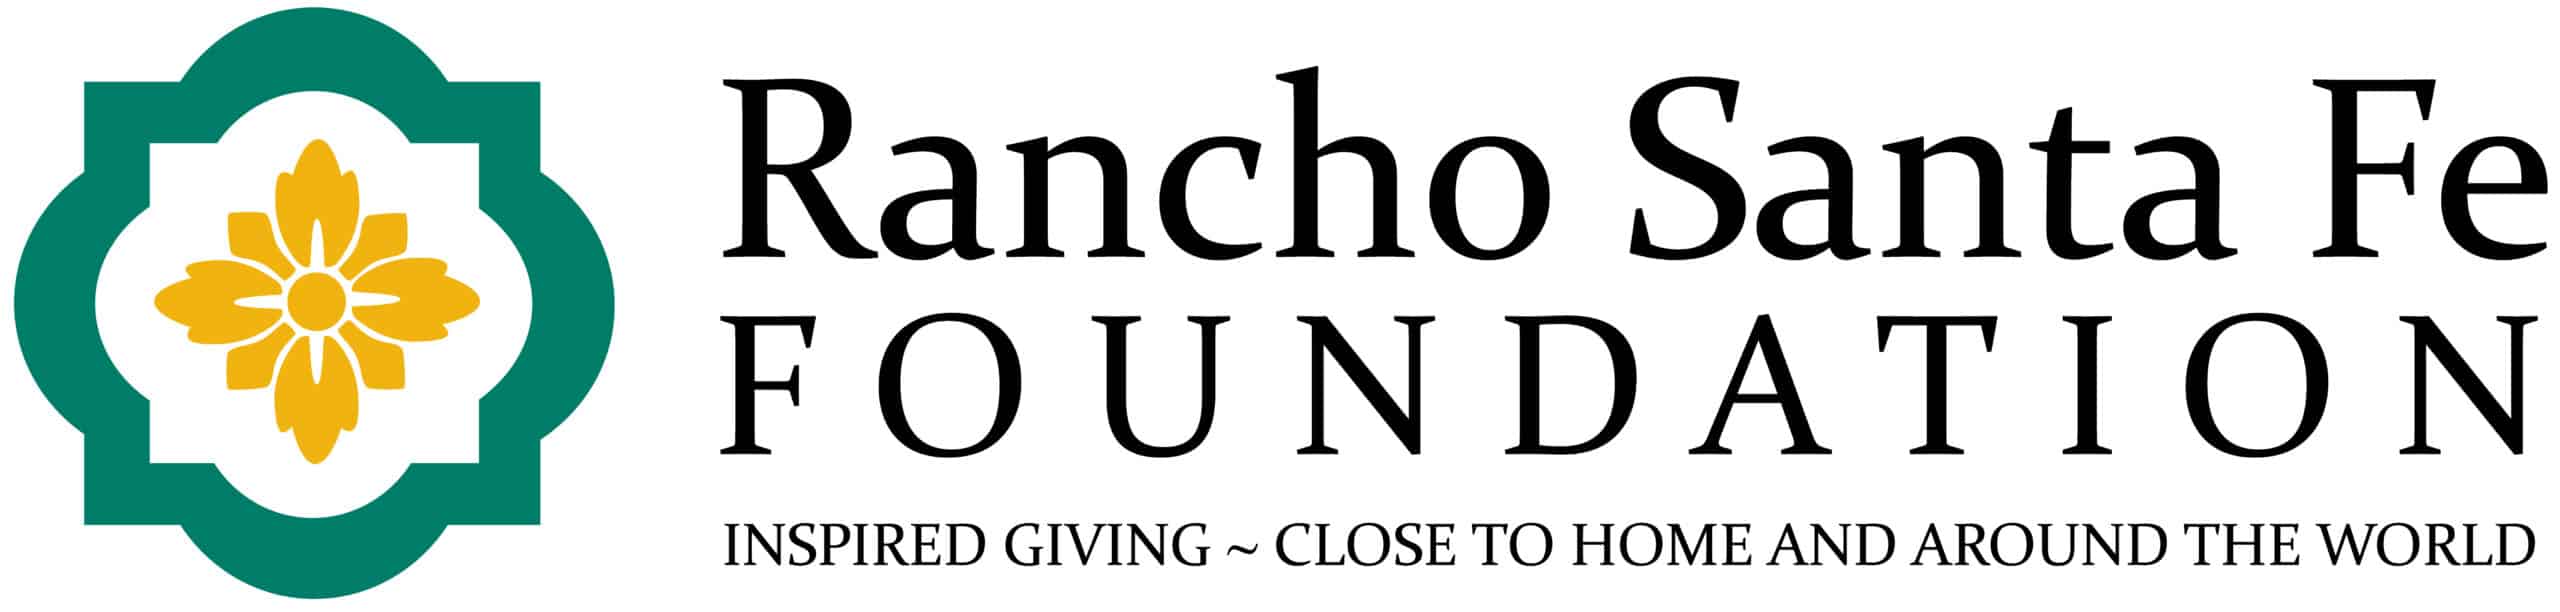 Rancho Santa Fe Foundation